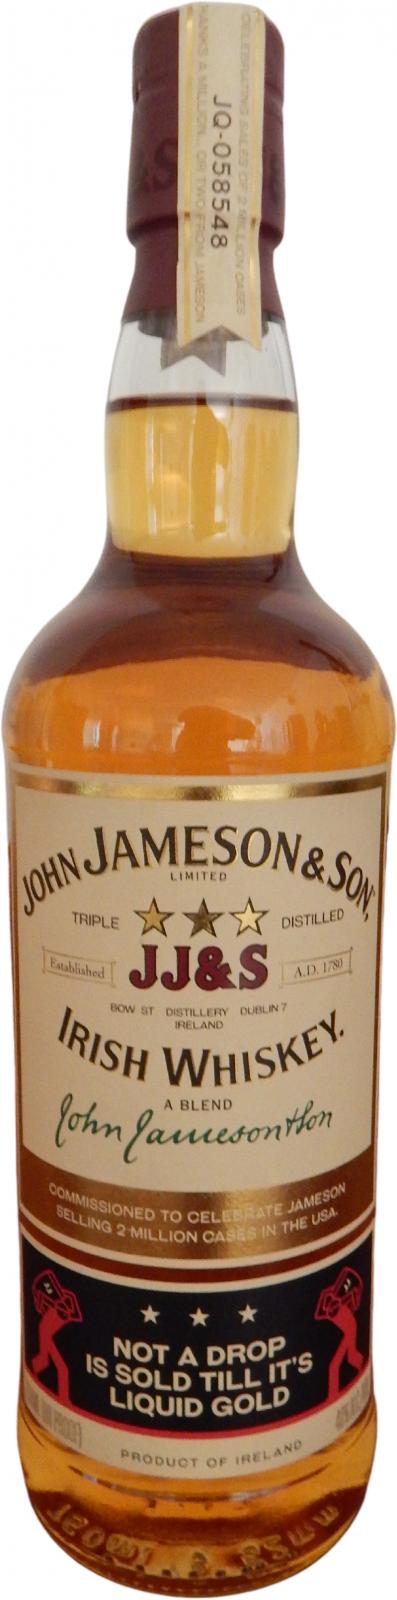 John Jameson & Son JJ&S Commemorative gift bottling 40% 750ml